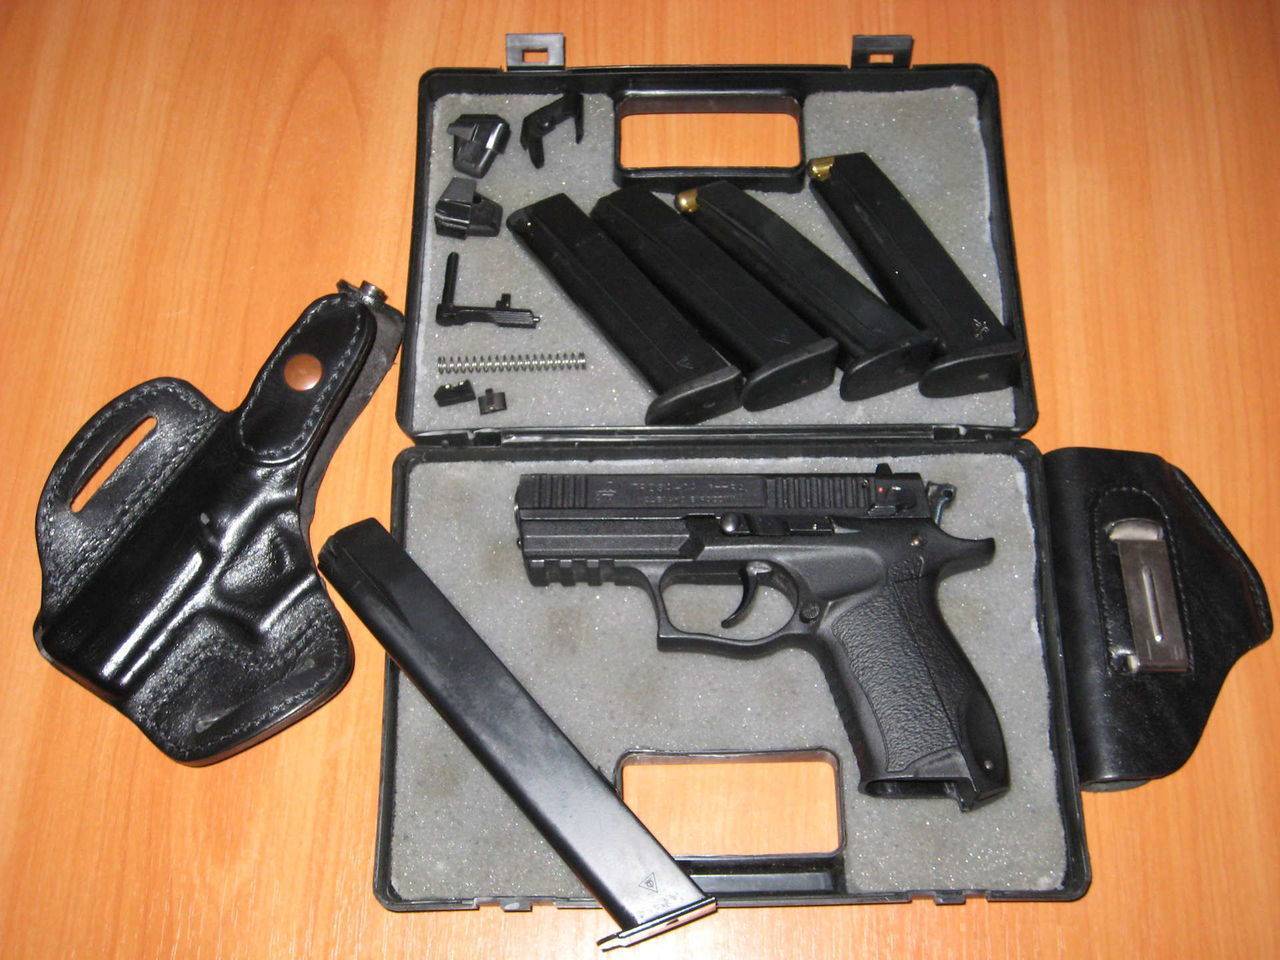 Травматический пистолет иж-78-9т или псмыч обзор и технические характеристики, отзывы владельцев травмата, патрон калибра 9мм